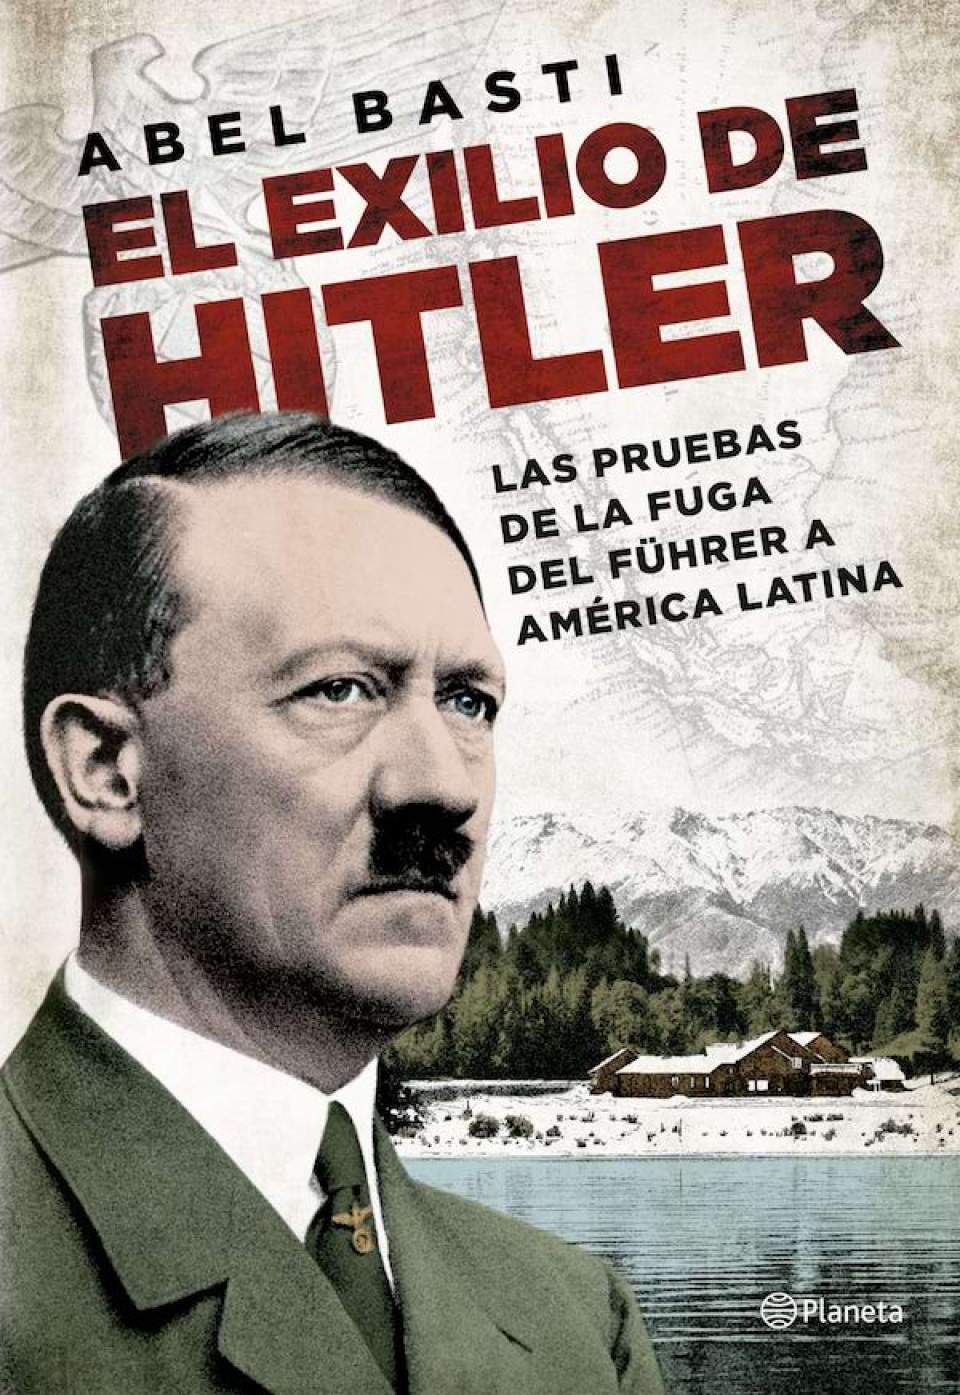 "El exilio de Hitler" de Abel Basti: nebulosas y mentiras de la Historia Oficial